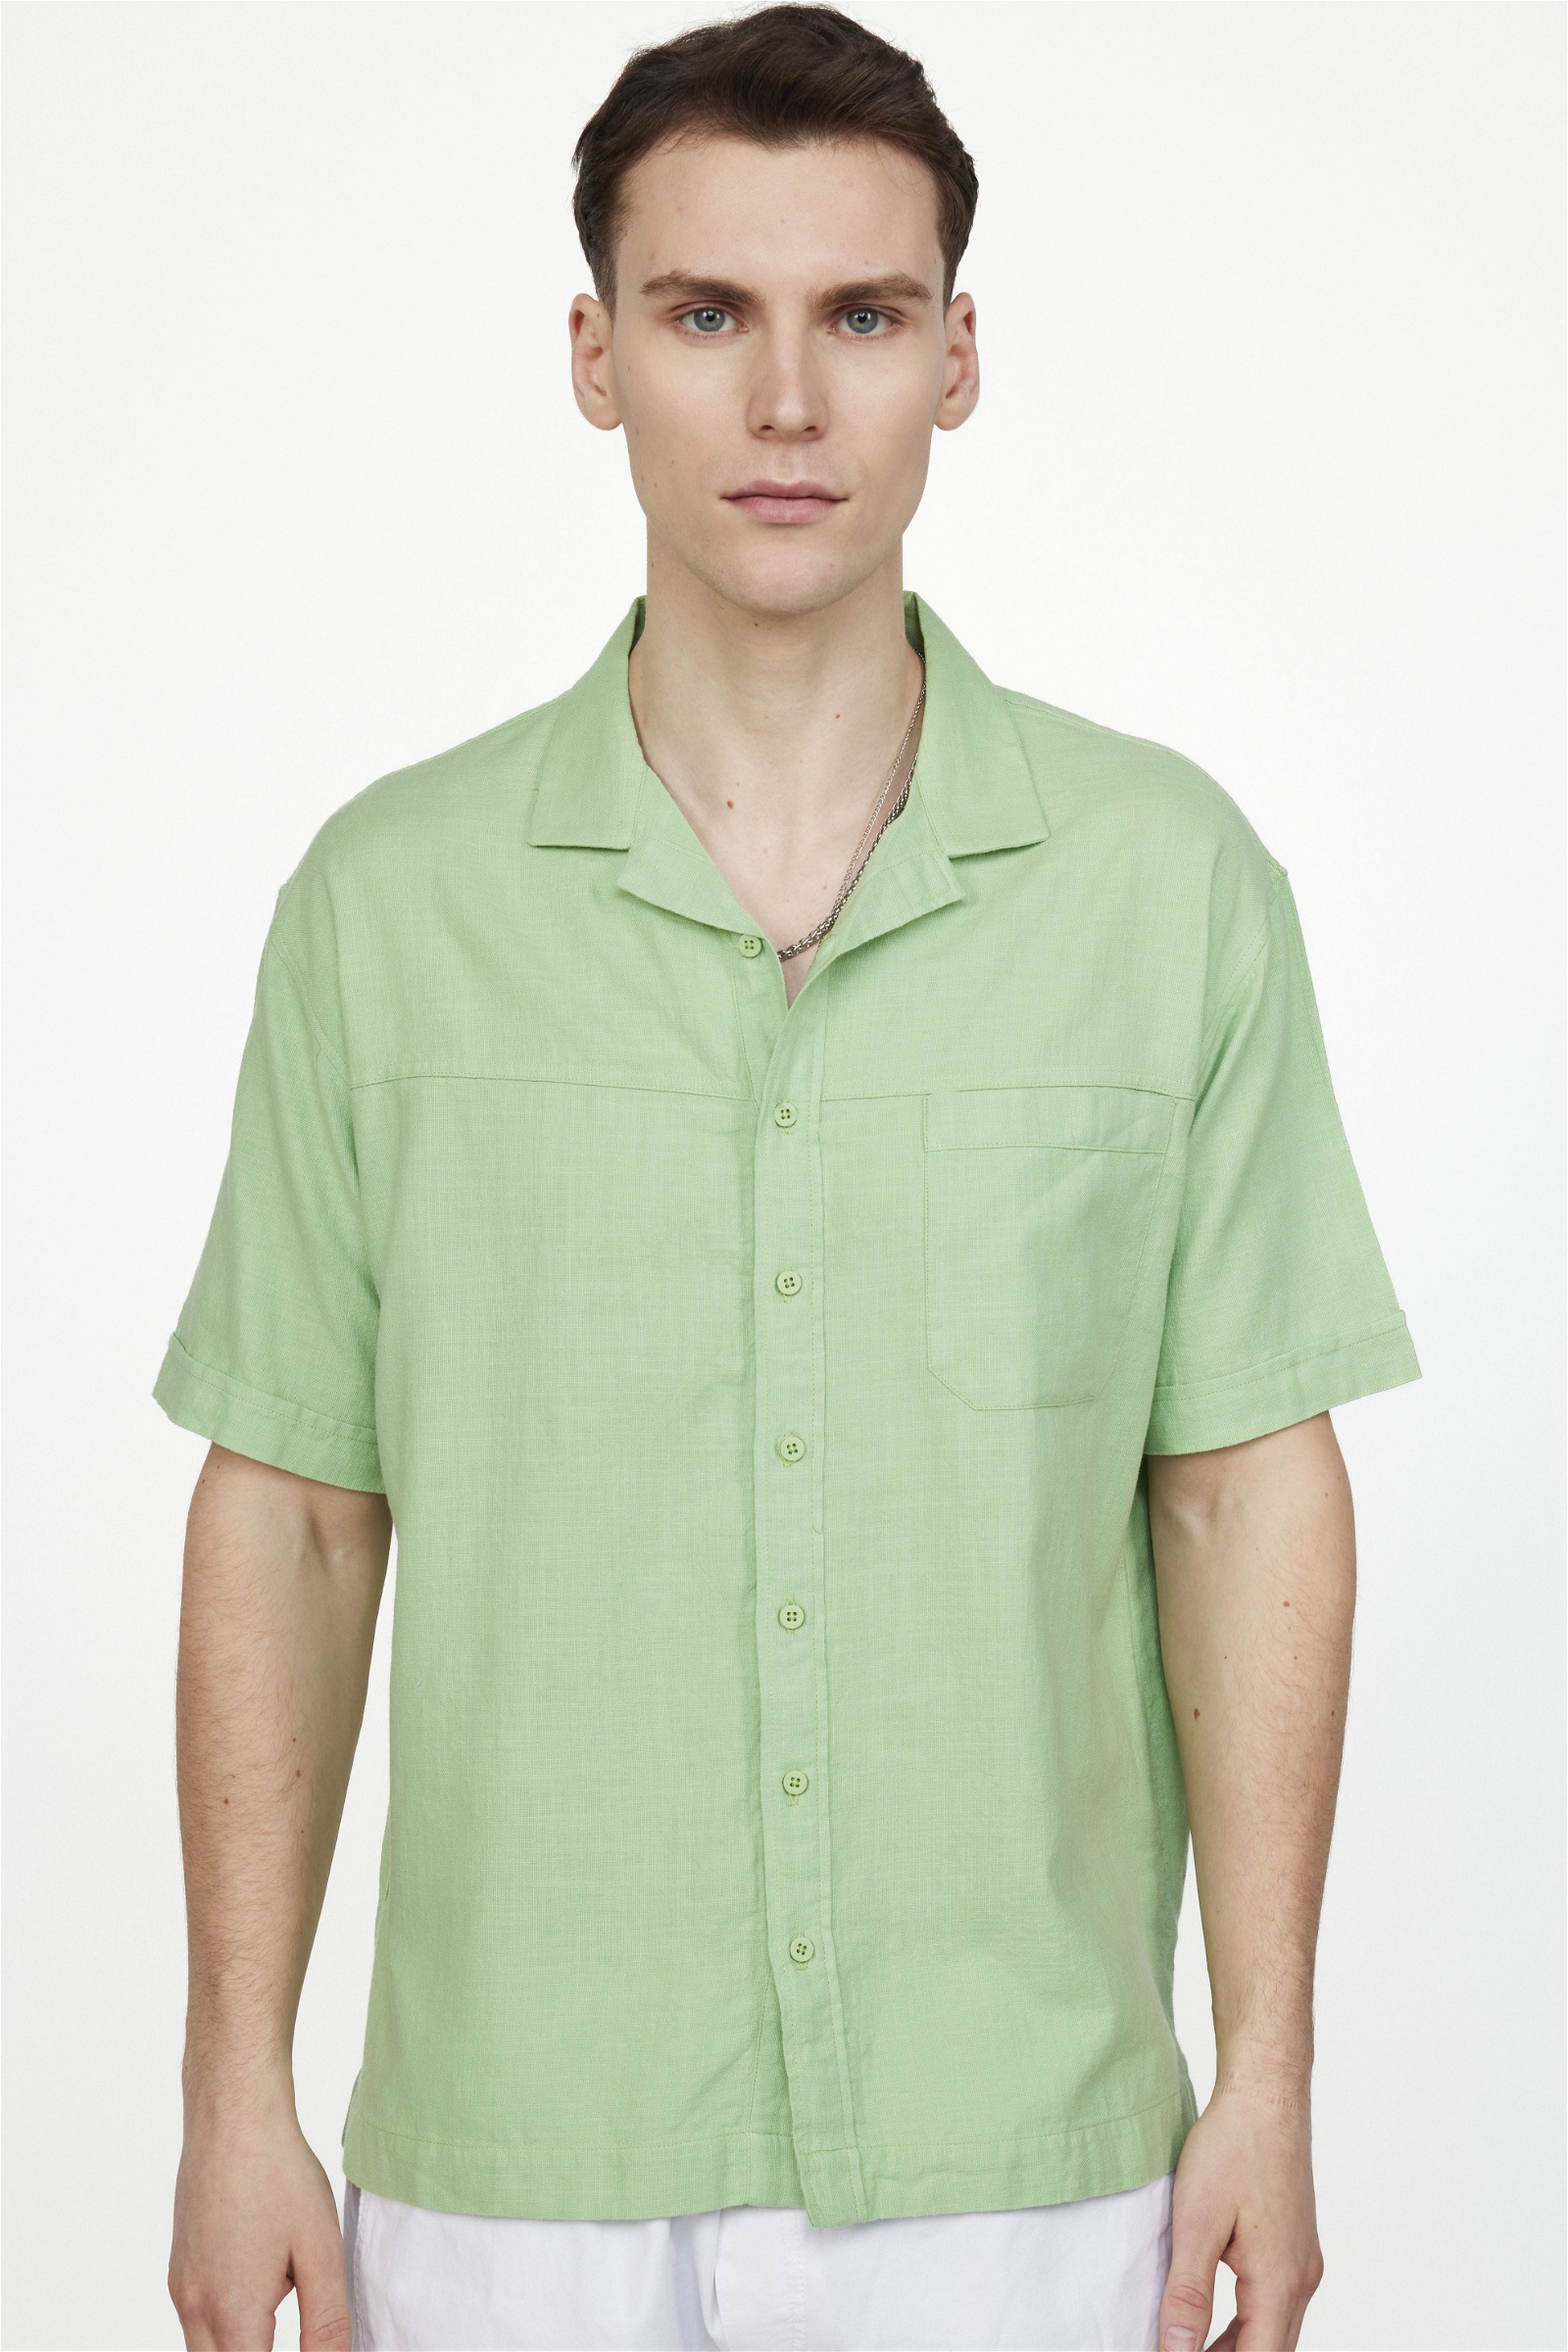 Plain Green Shirt